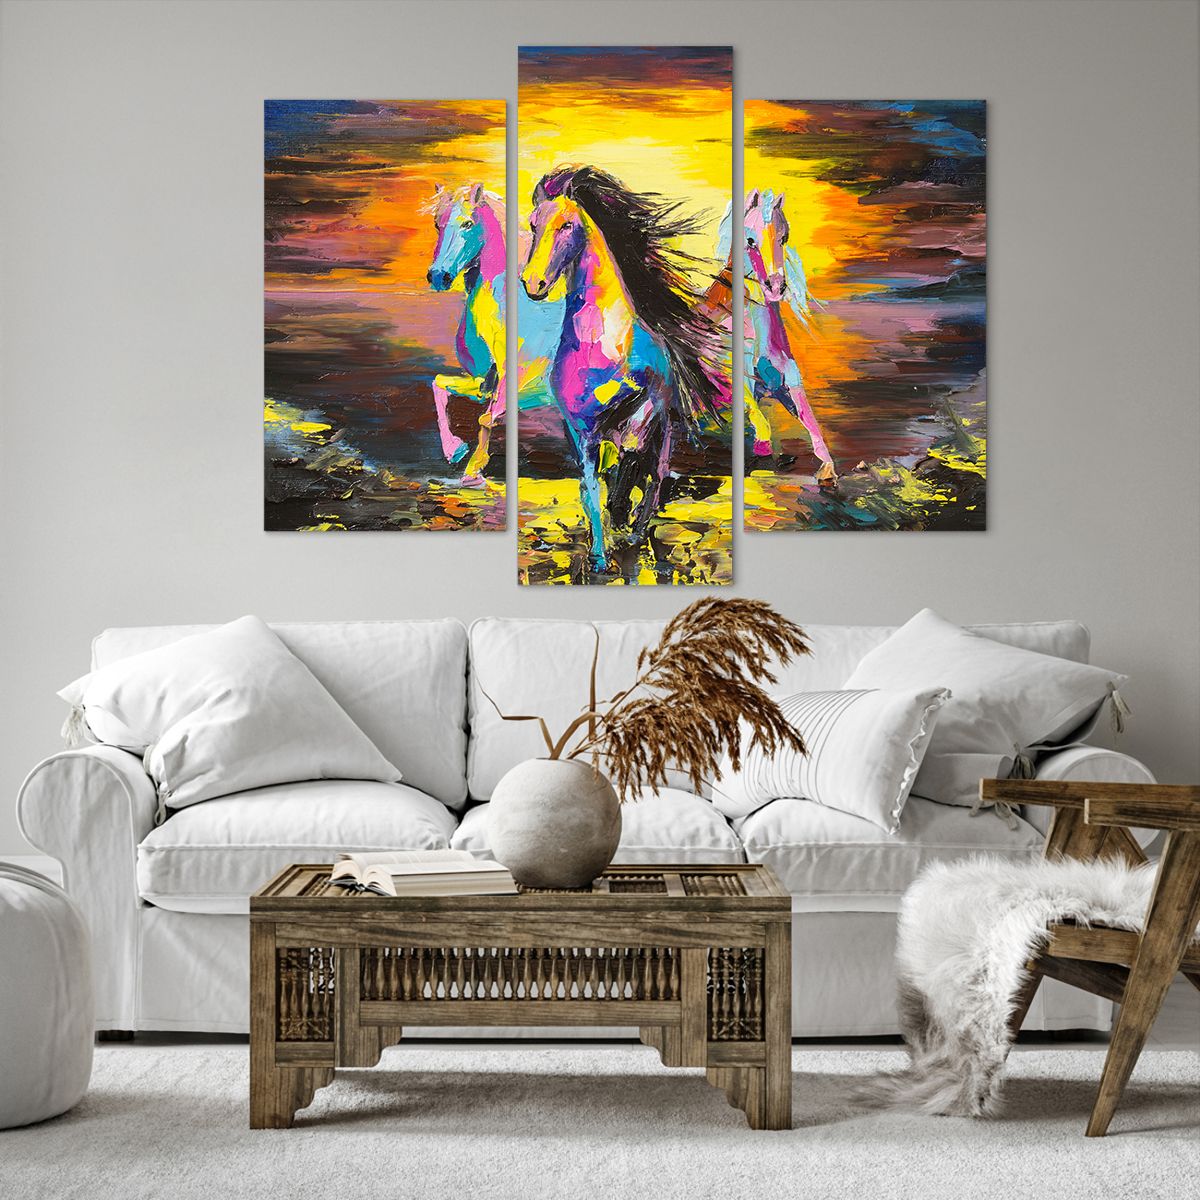 Bild auf Leinwand Tiere, Bild auf Leinwand Die Pferde, Bild auf Leinwand Freiheit, Bild auf Leinwand Kunst, Bild auf Leinwand Abstraktion